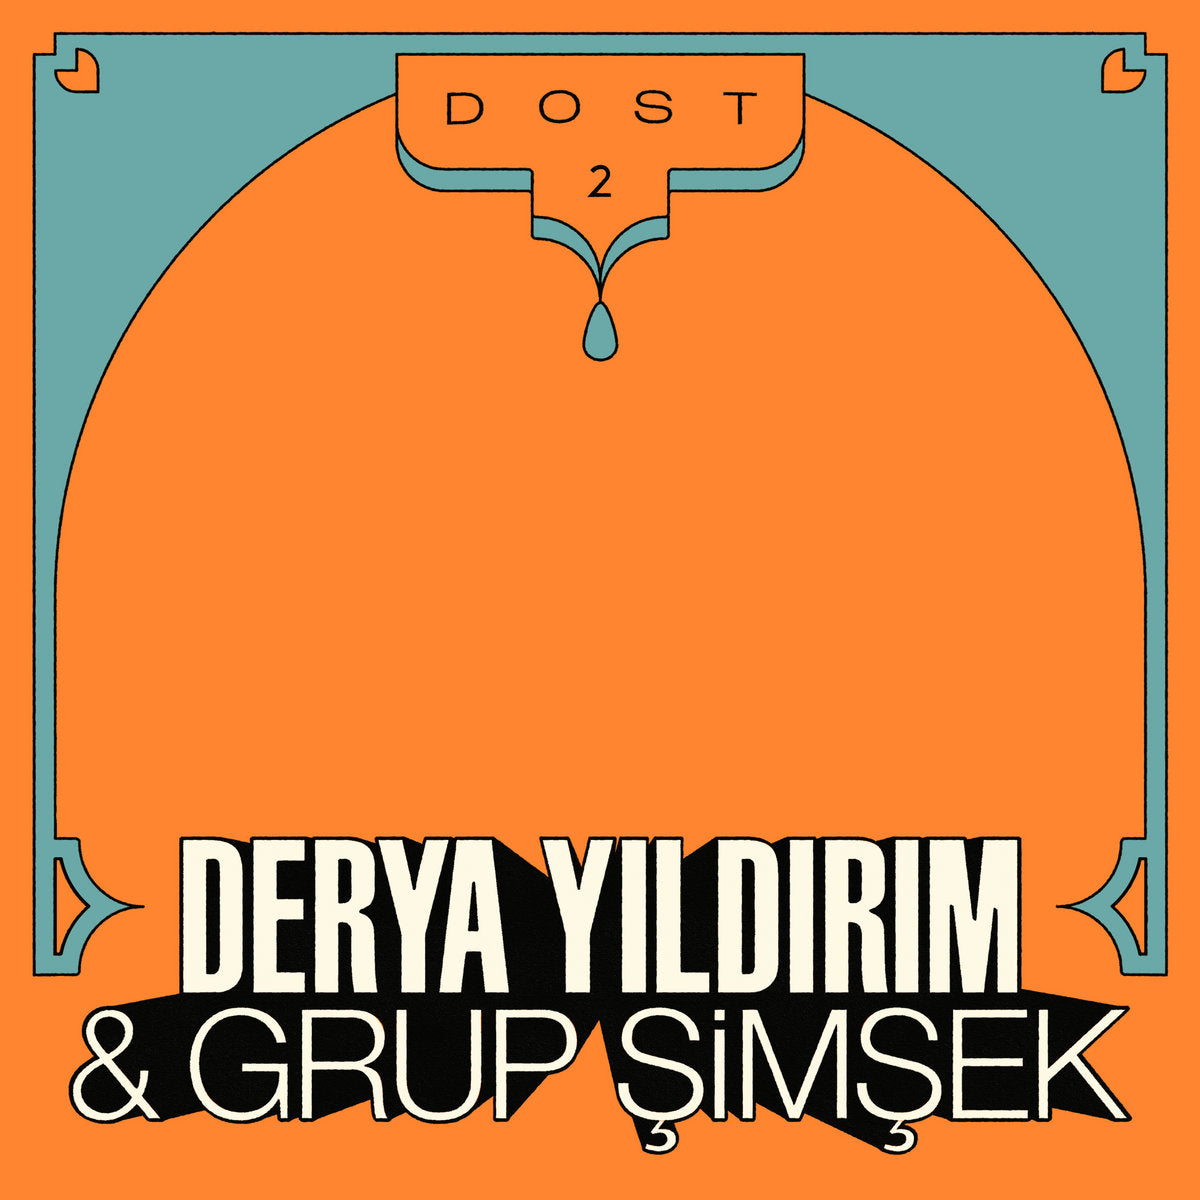 Derya Yildrim & Grup Simsek - Dost 2 - LP